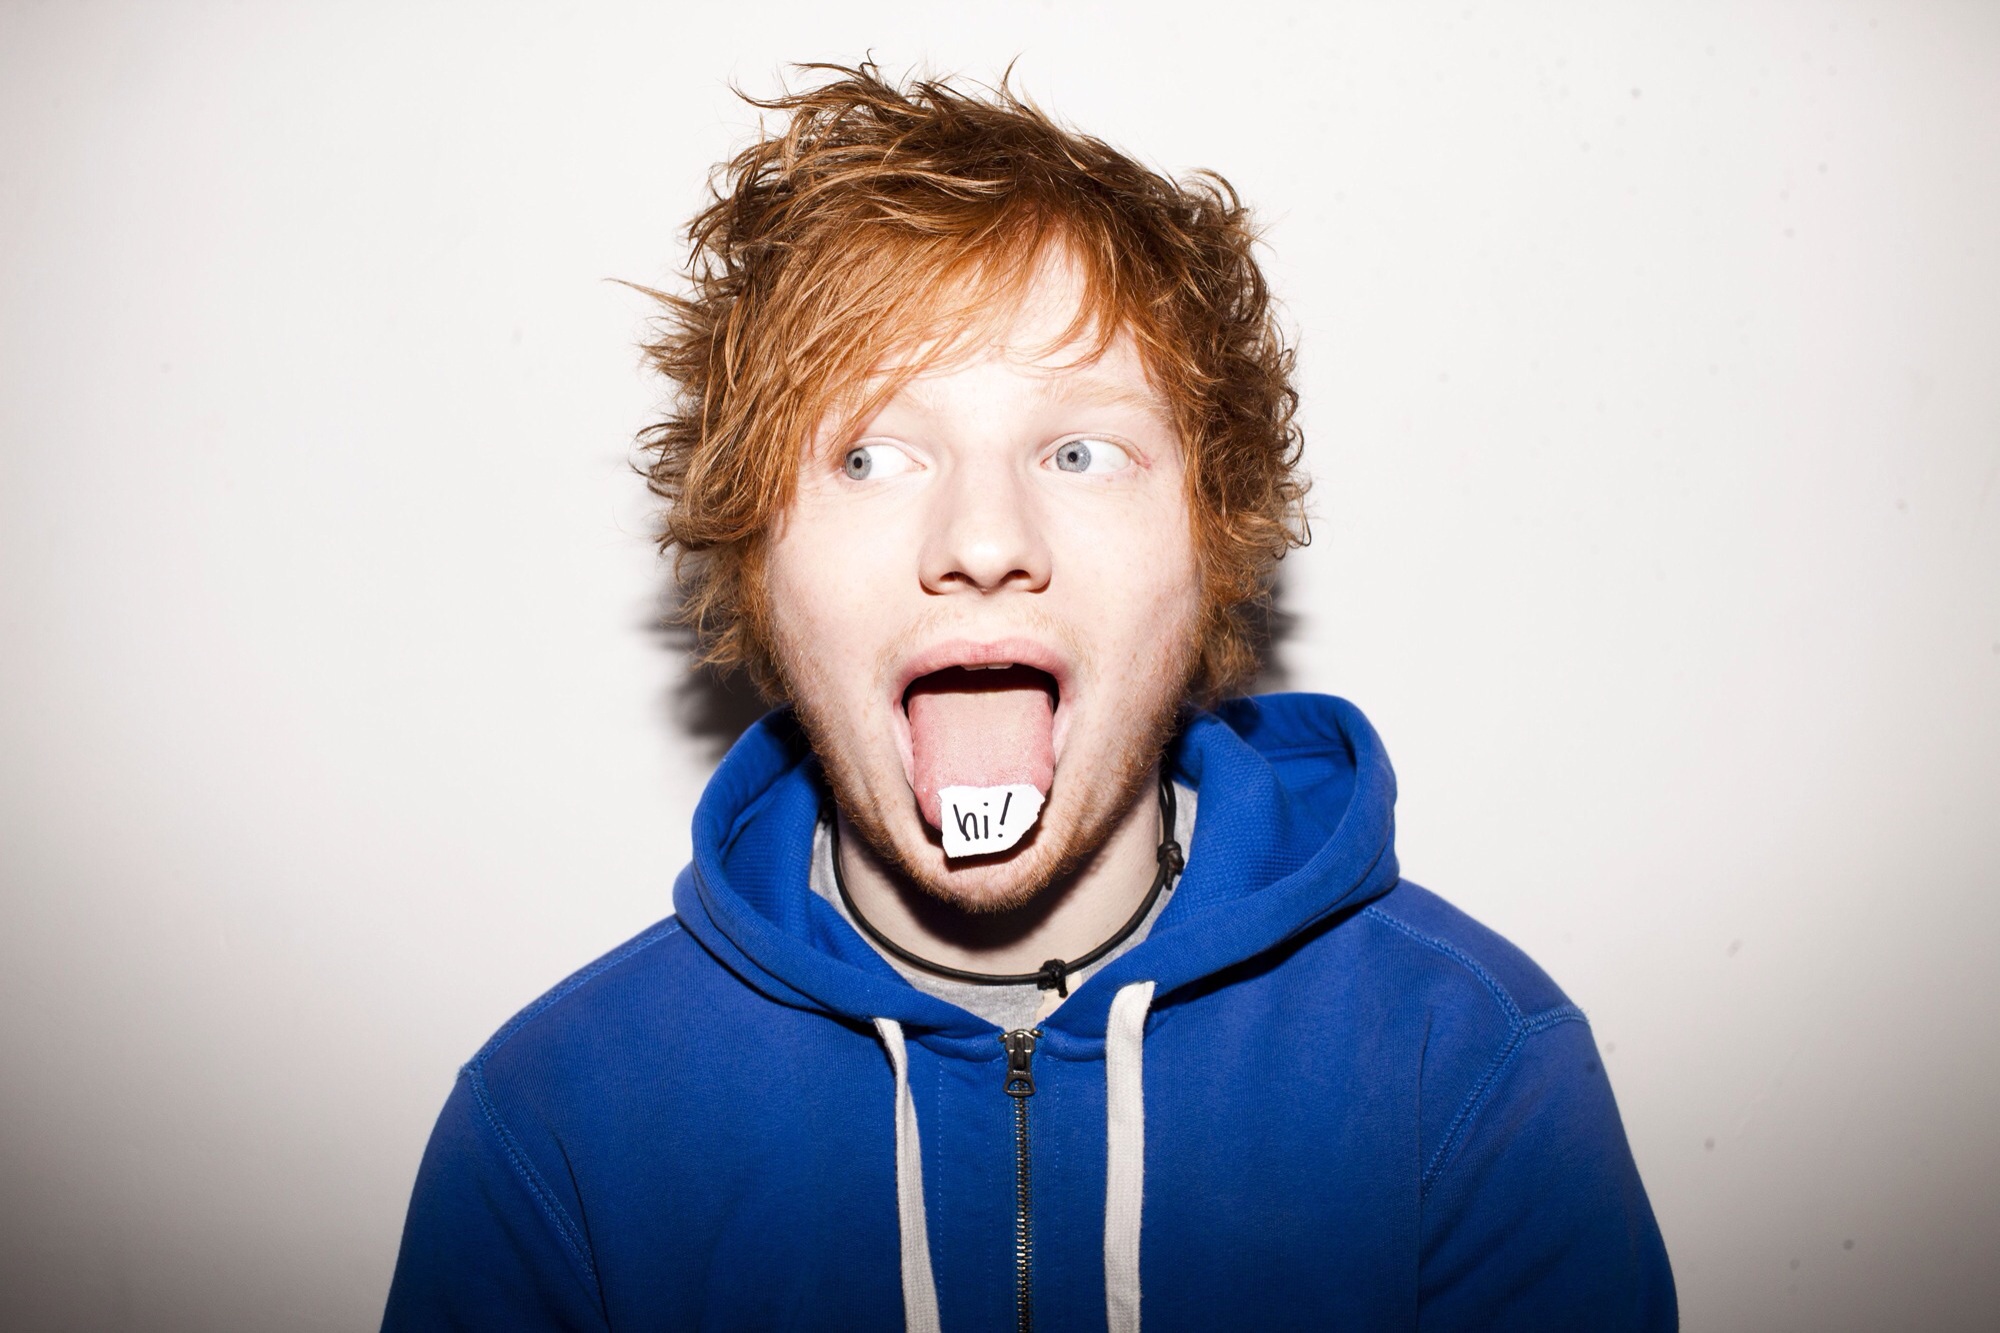      Ed Sheeran.   Image - MTV.com  